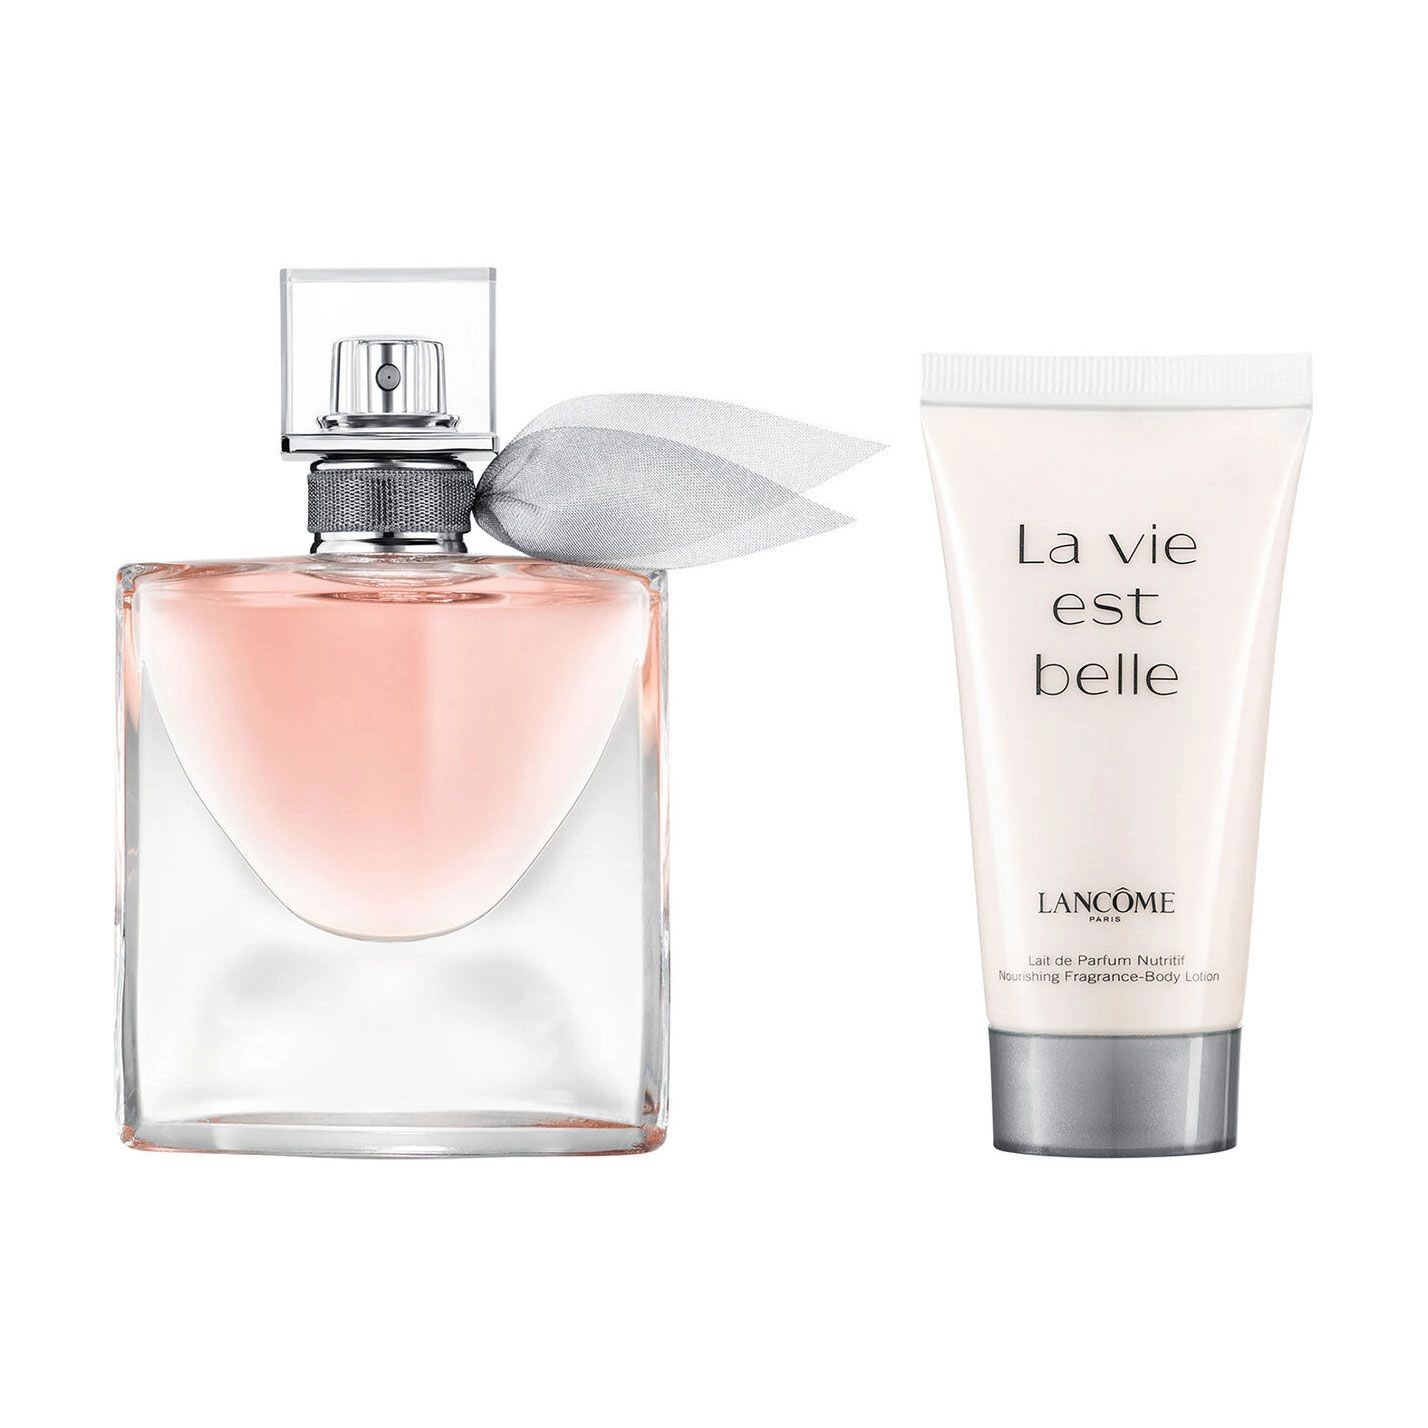 Lancome Парфюмированный набор женский La Vie Est Belle (парфюмированная вода, 30 мл + лосьон для тела, 50 мл) - фото N2